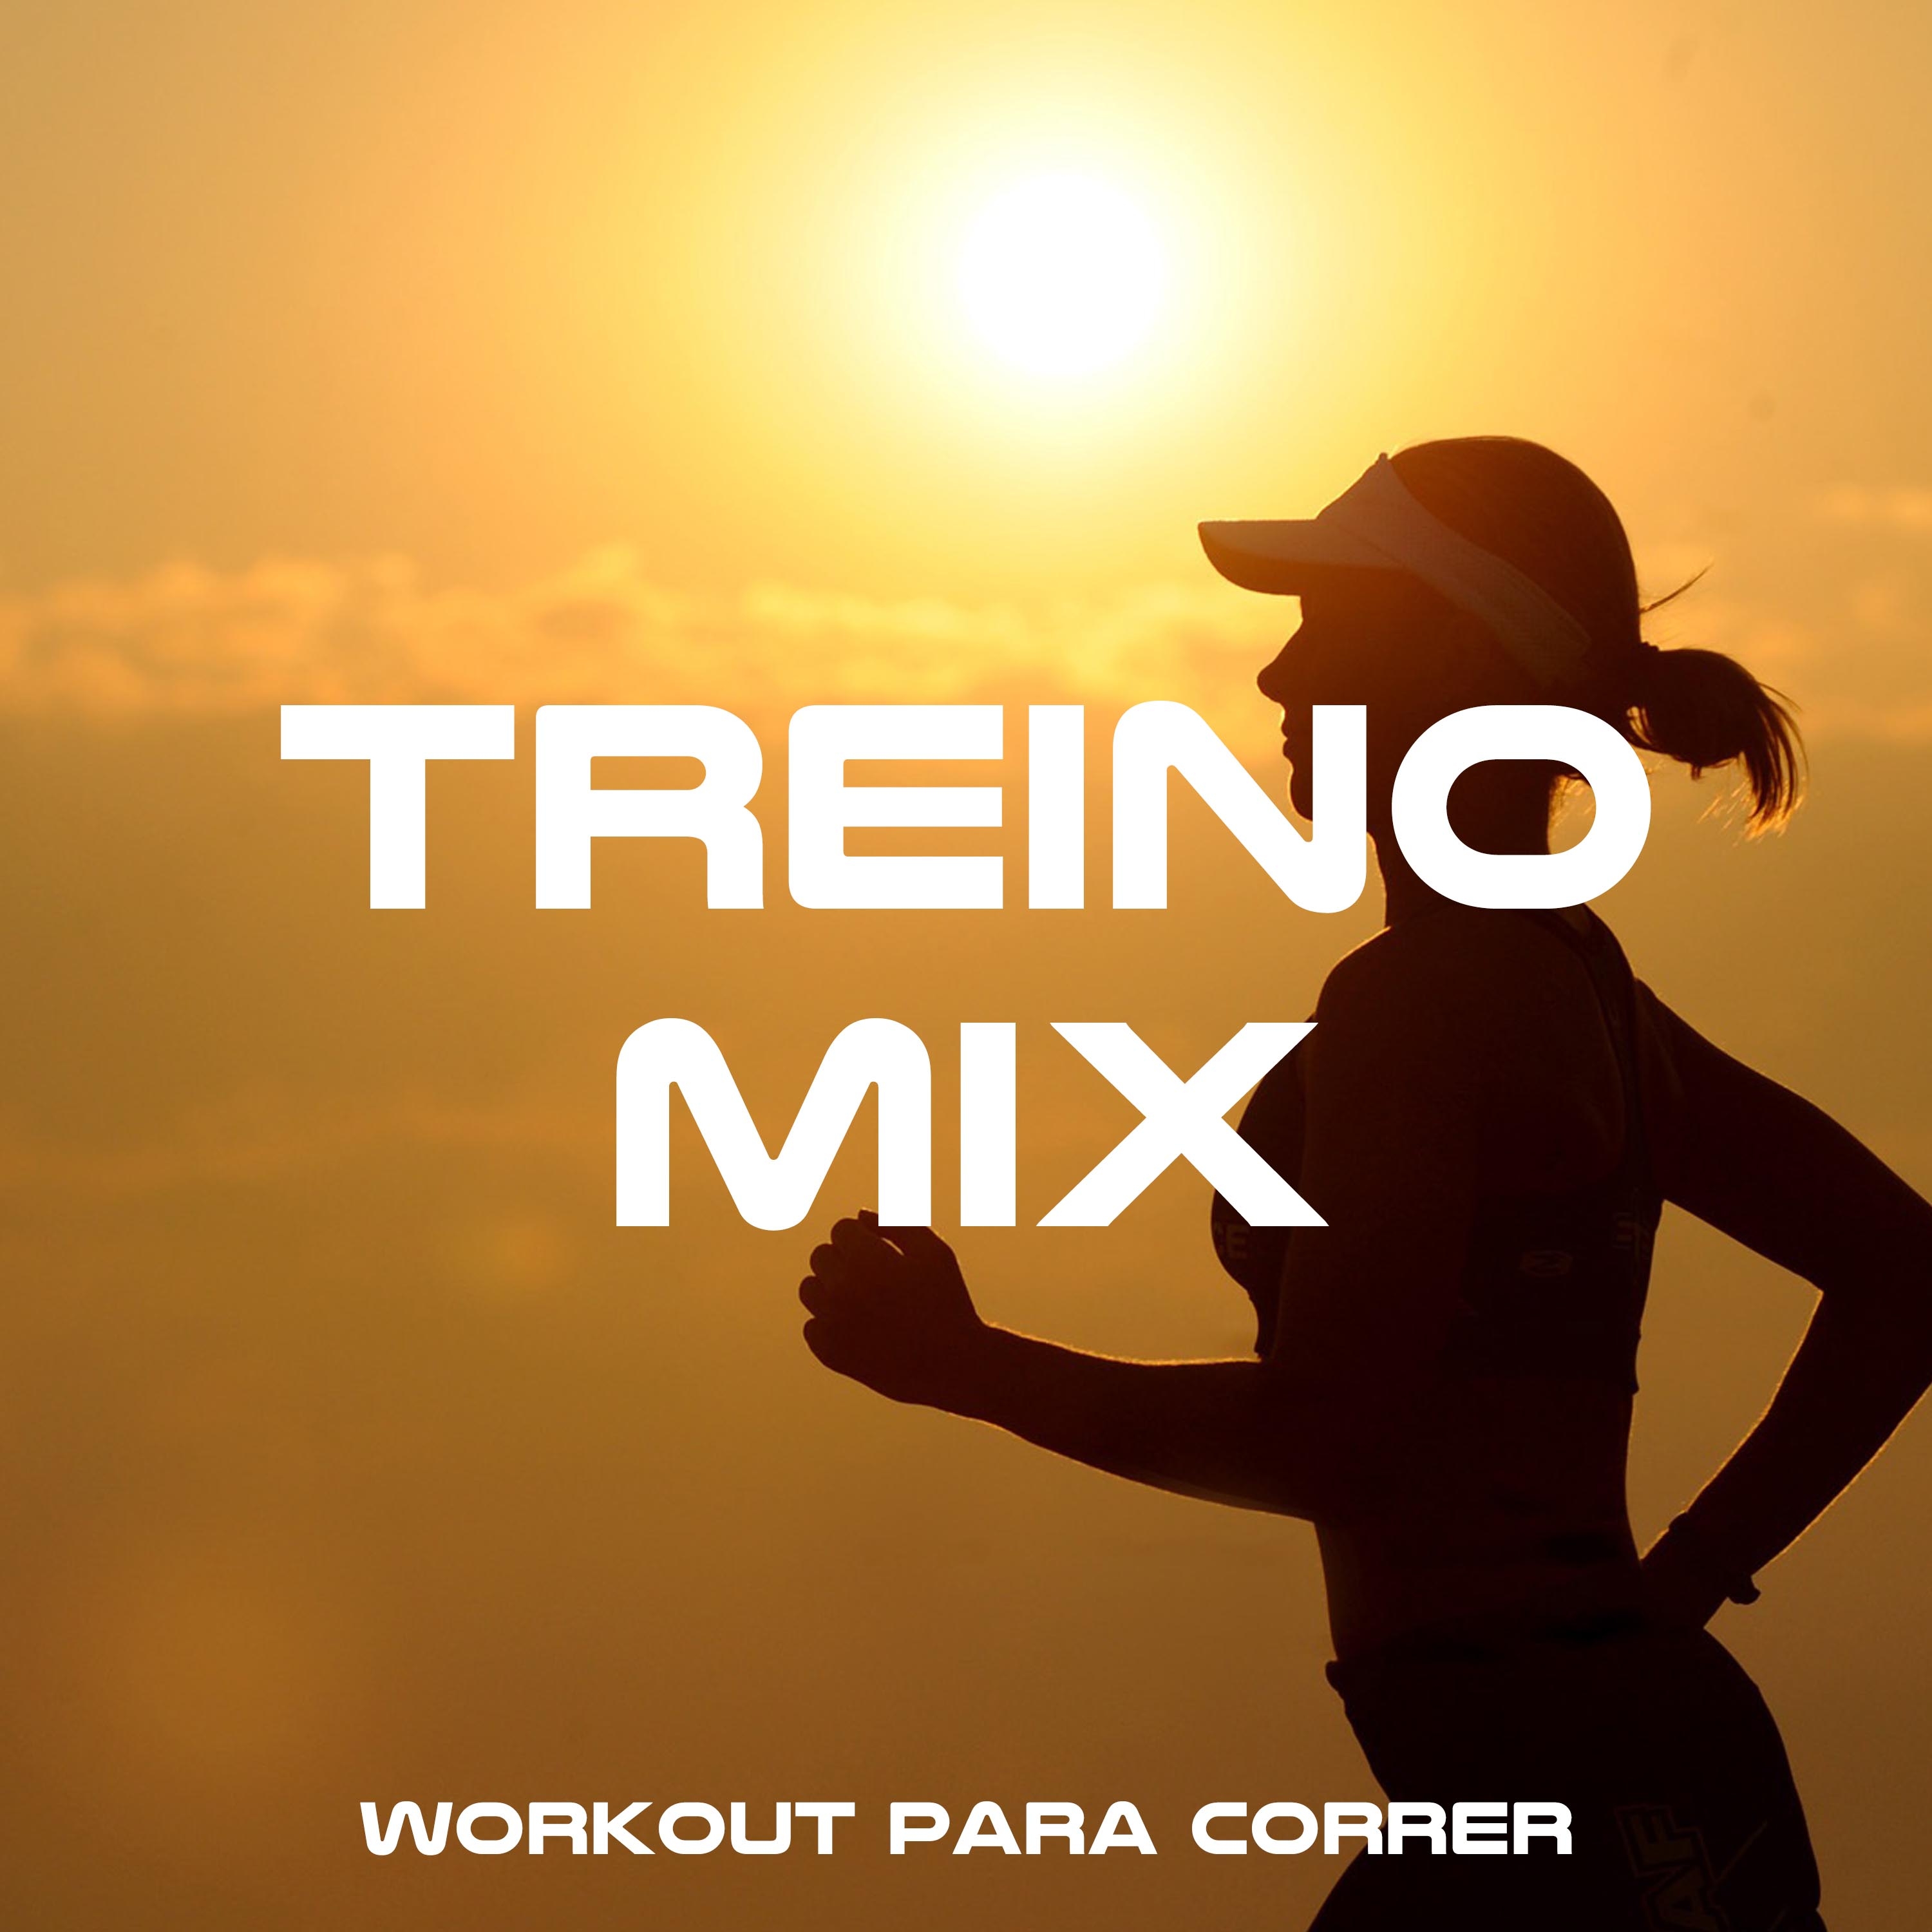 Treino Mix - a Melhor Seleção de Música de Treino, Workout para Correr